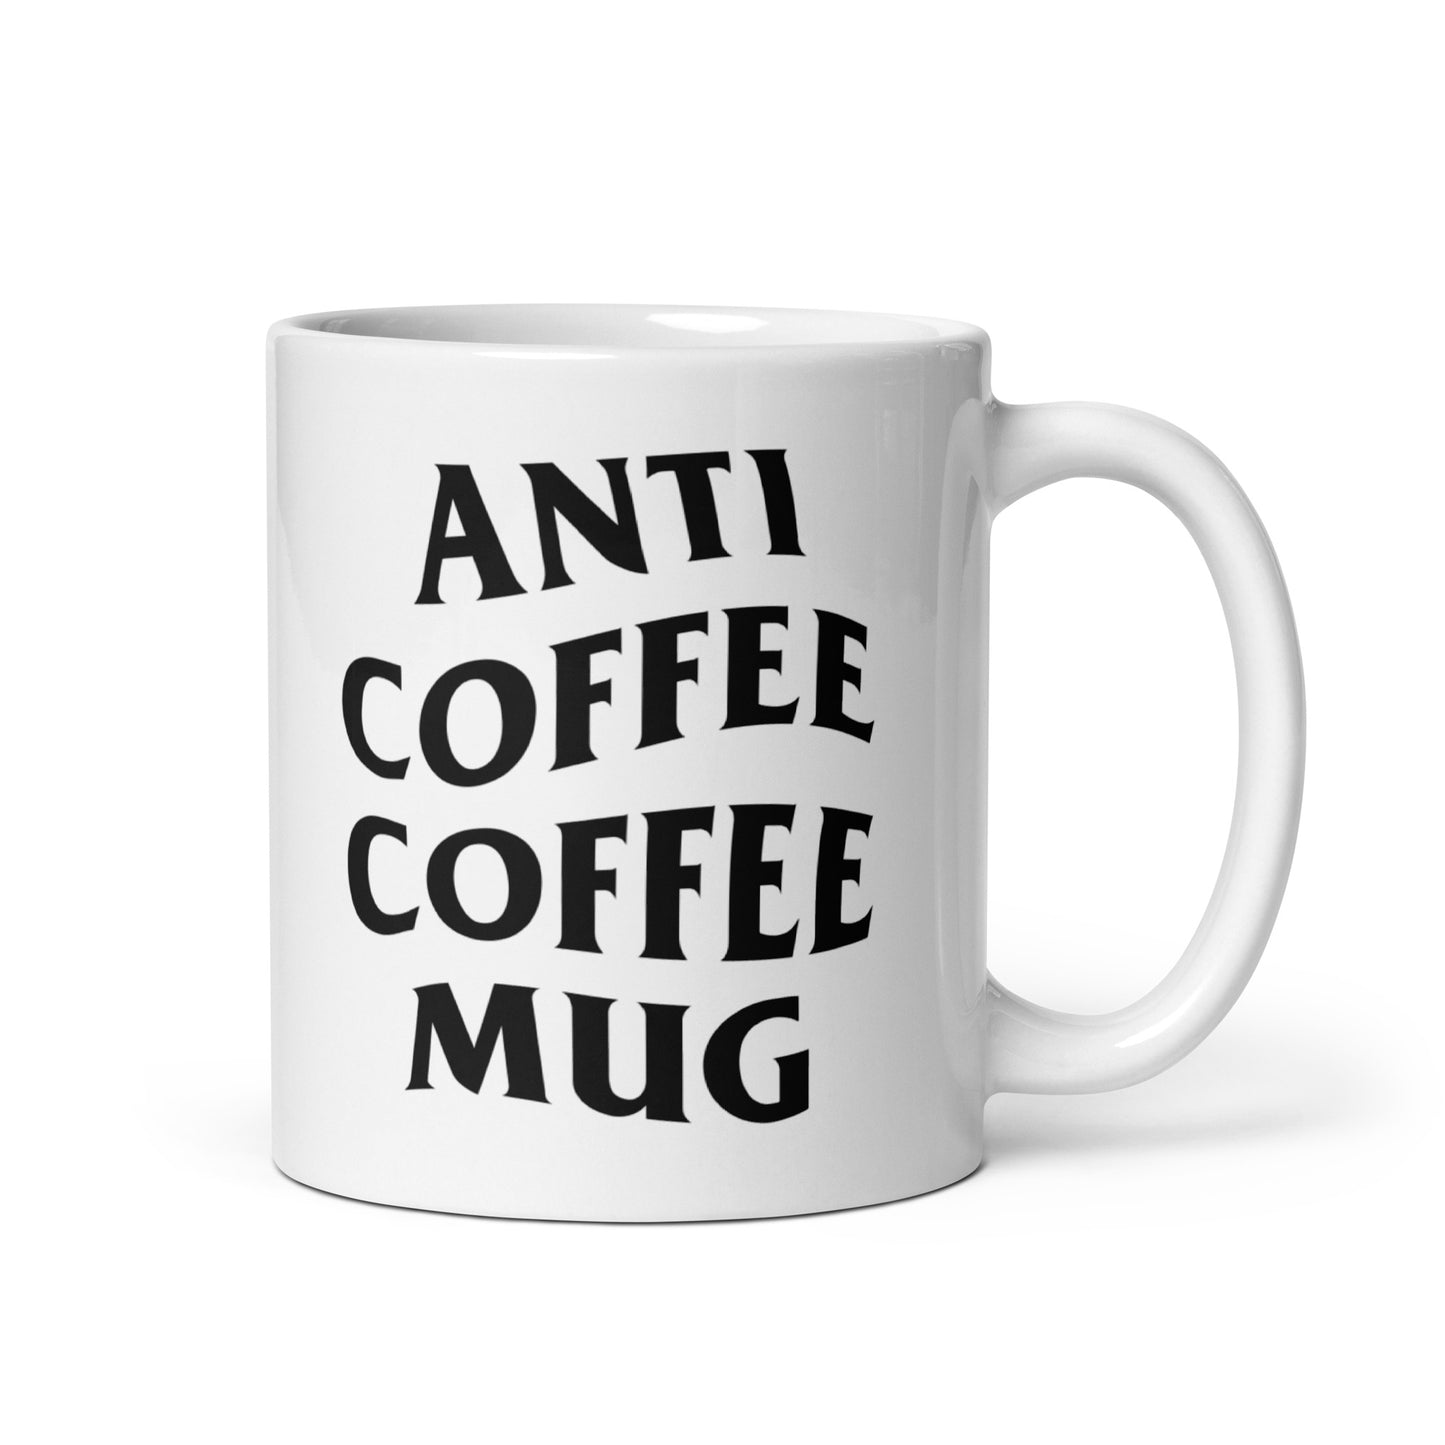 Anti Coffee Coffee Mug white glossy mug